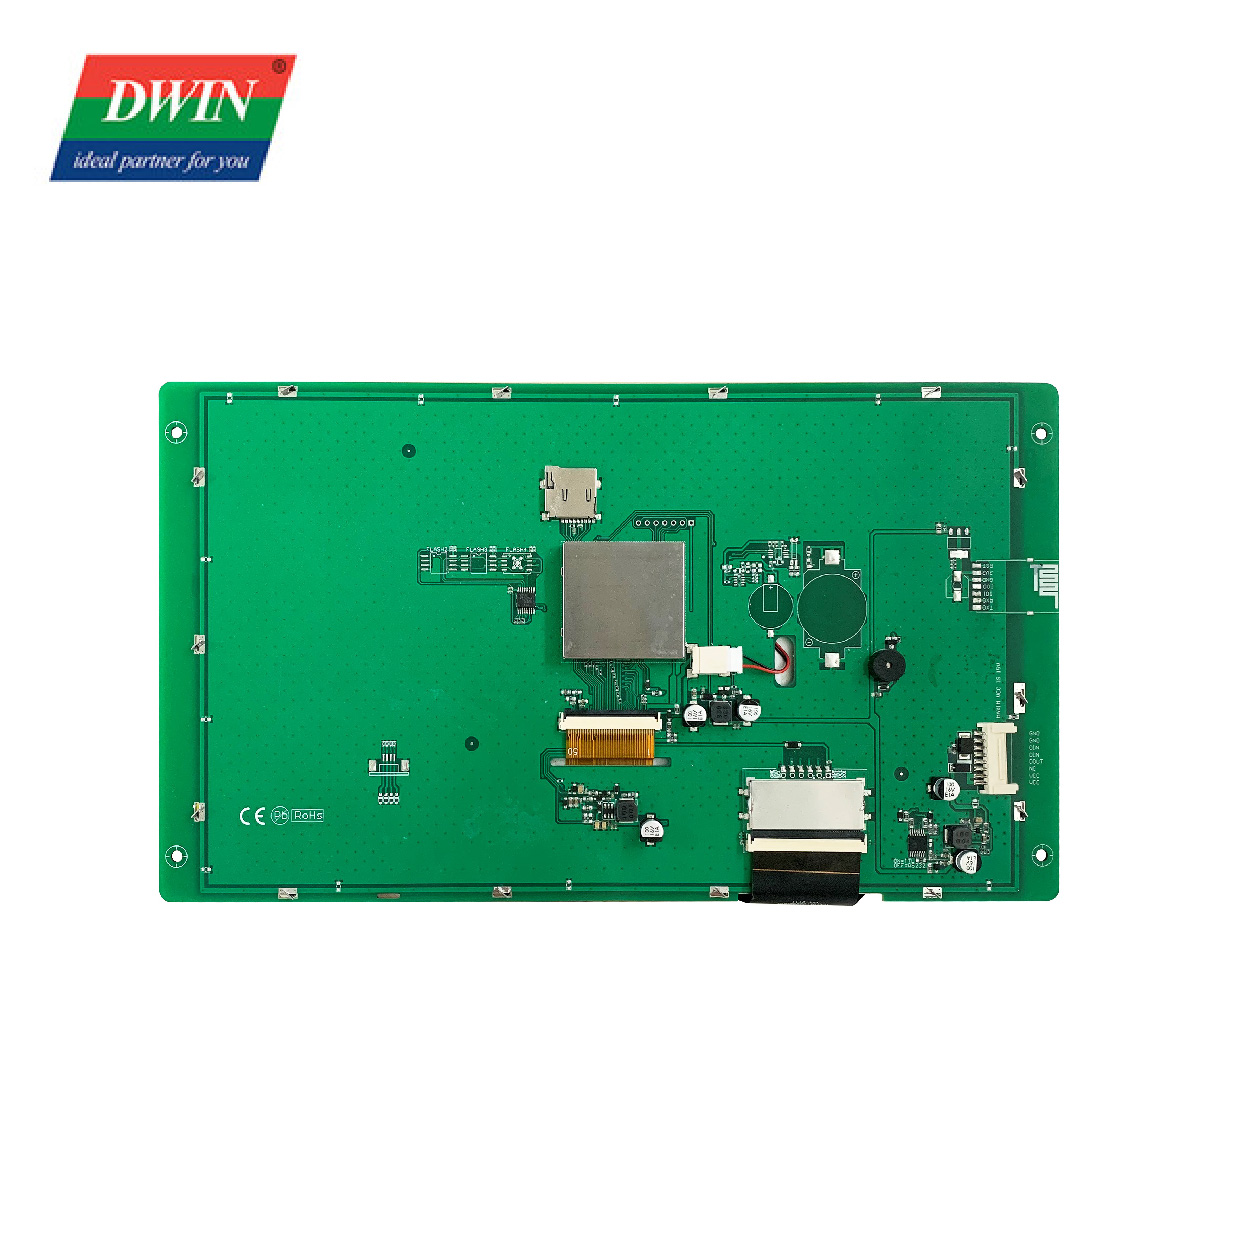 10.1 Pulzier HMI Touch Display DMG10600C101_04W (Grad Kummerċjali)